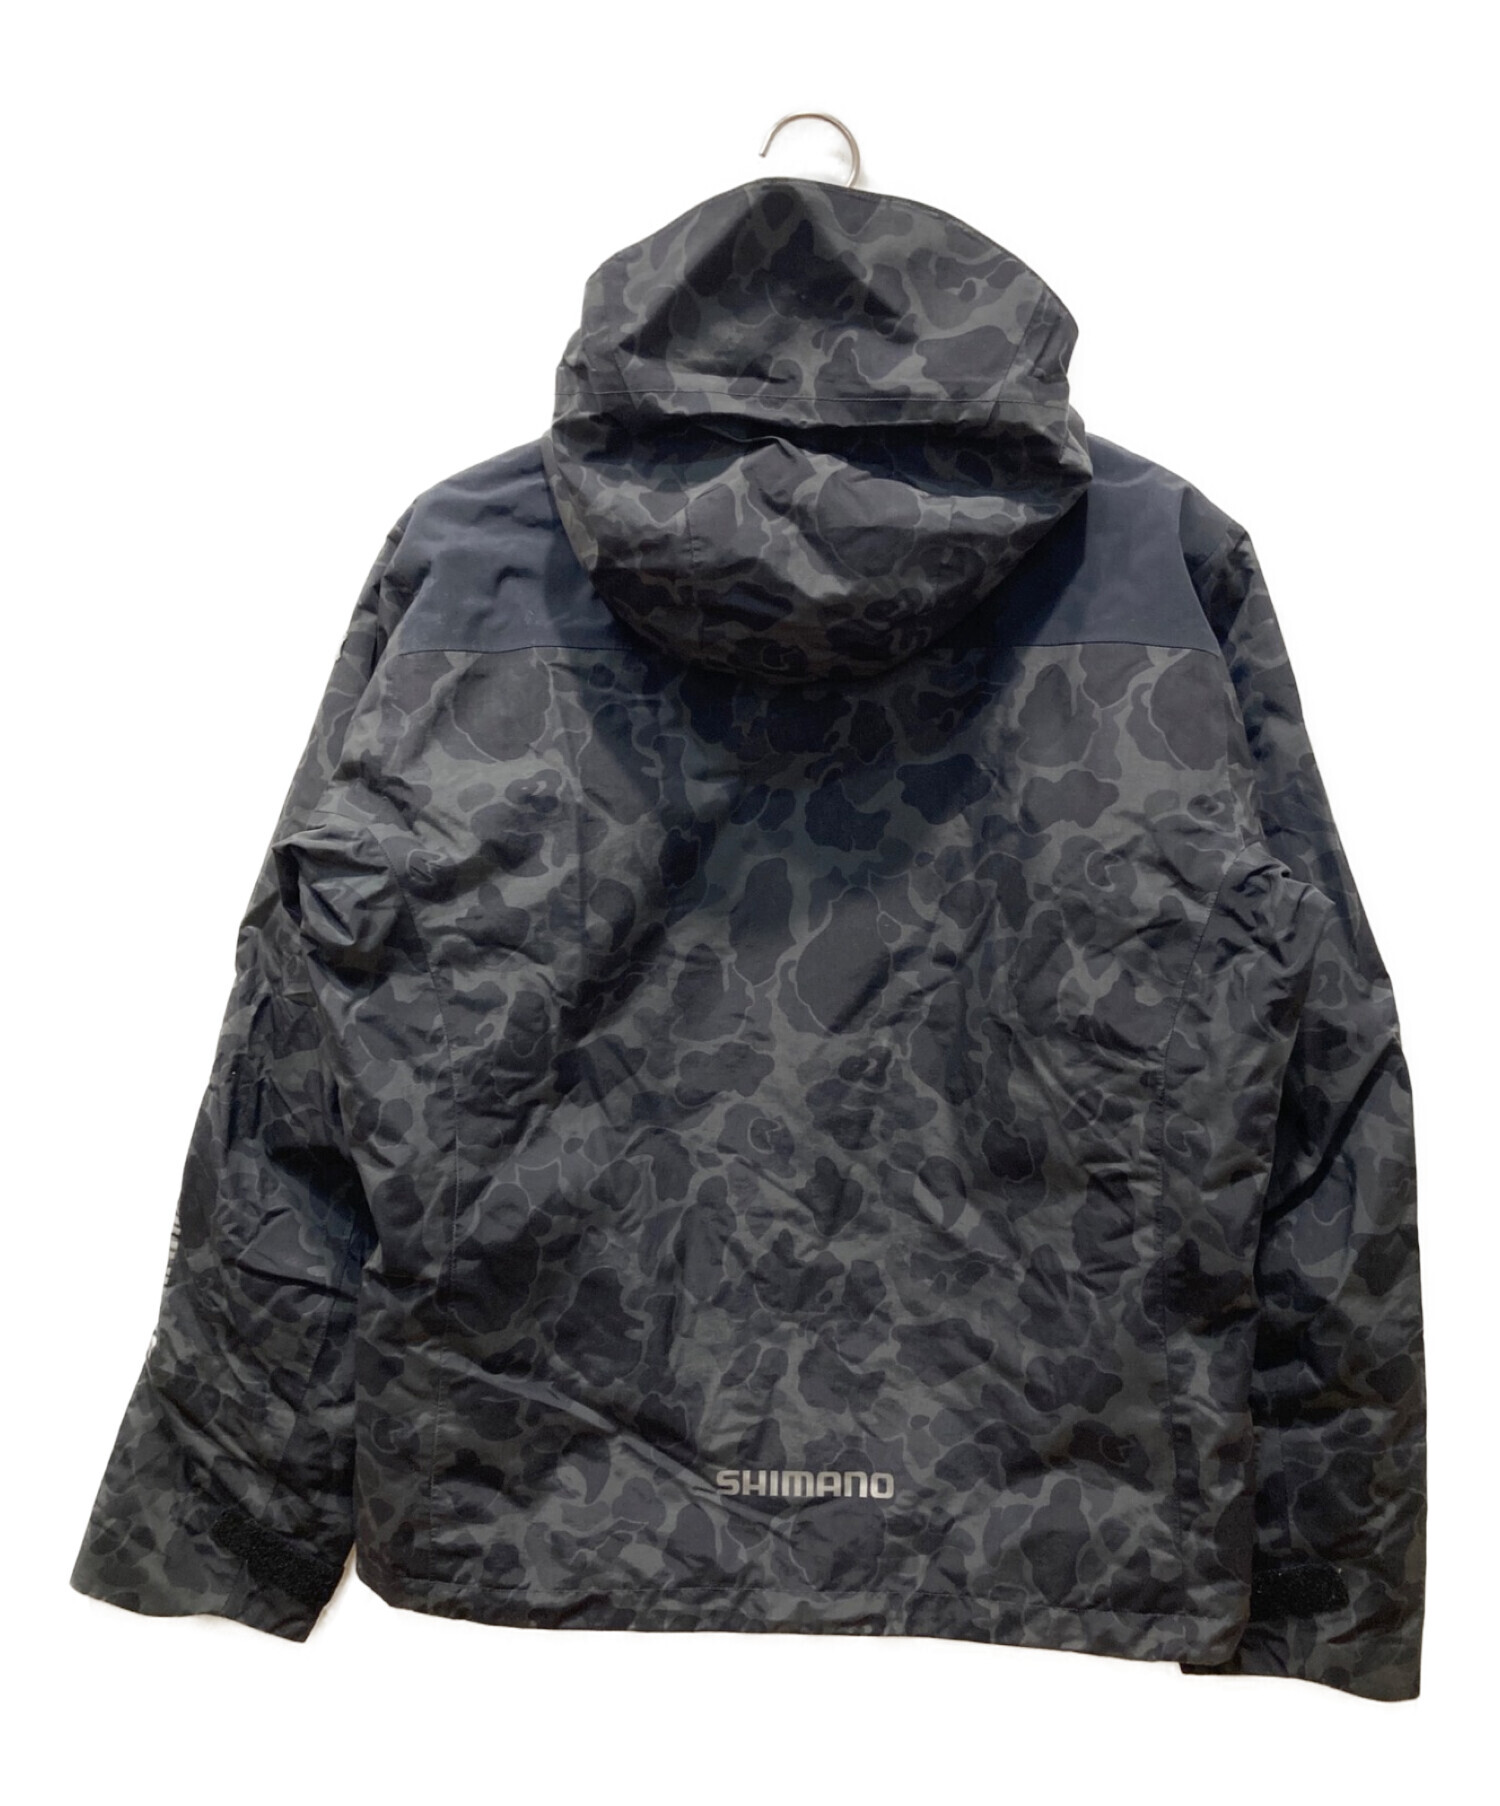 SHIMANO (シマノ) DSエクスプローラーウォームジャケット ブラック サイズ:L